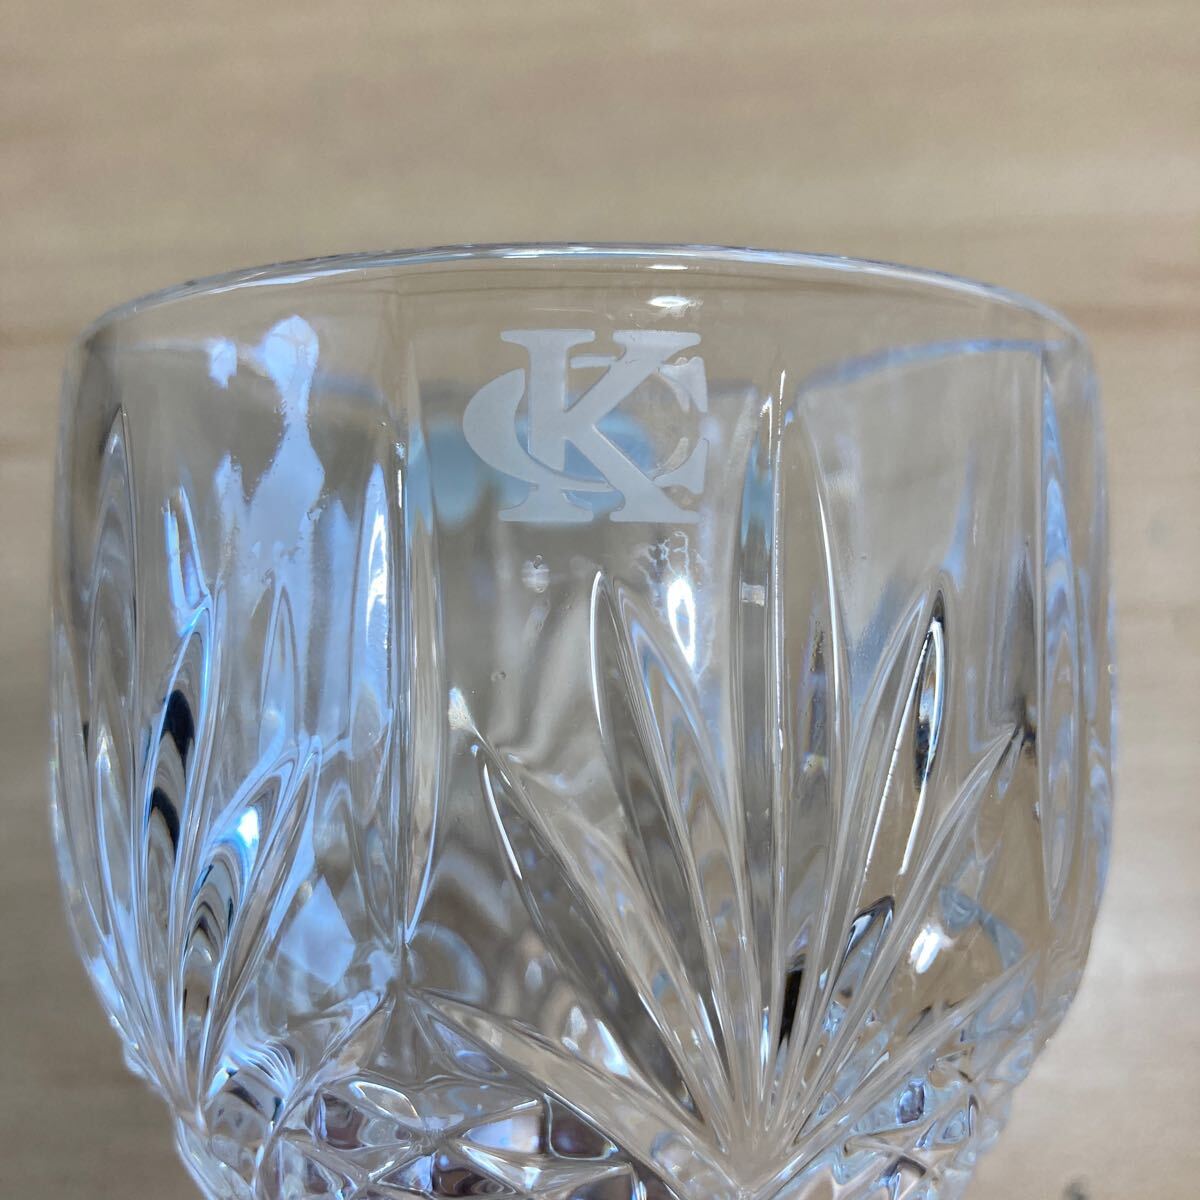 BOHEMIA ボヘミアクリスタル グラス ワイングラス 径7.8cm高さ16.5cm ガラス インテリア コレクション 未使用 保管品(4-2)_画像4